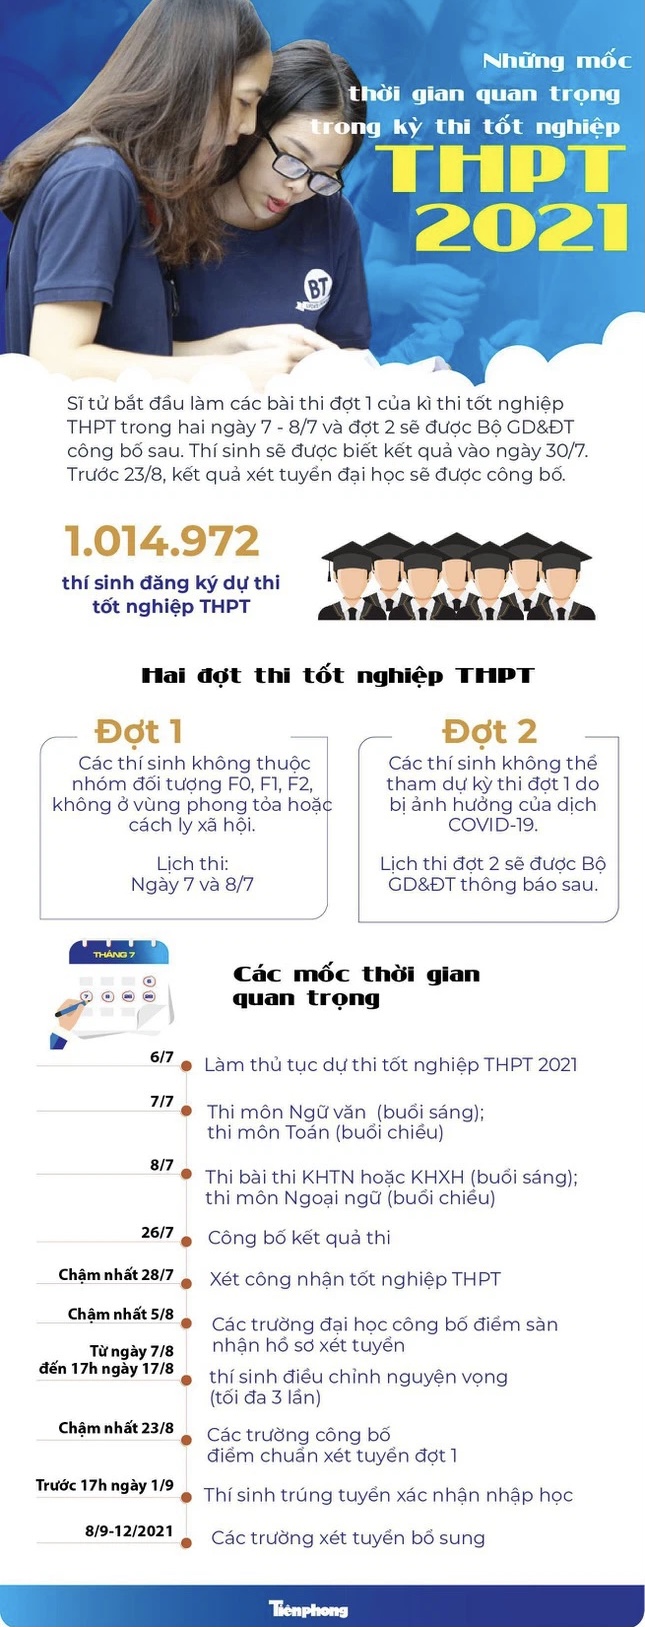 TPHCM cho phép thí sinh được thay đổi địa điểm thi tốt nghiệp THPT - Ảnh 2.